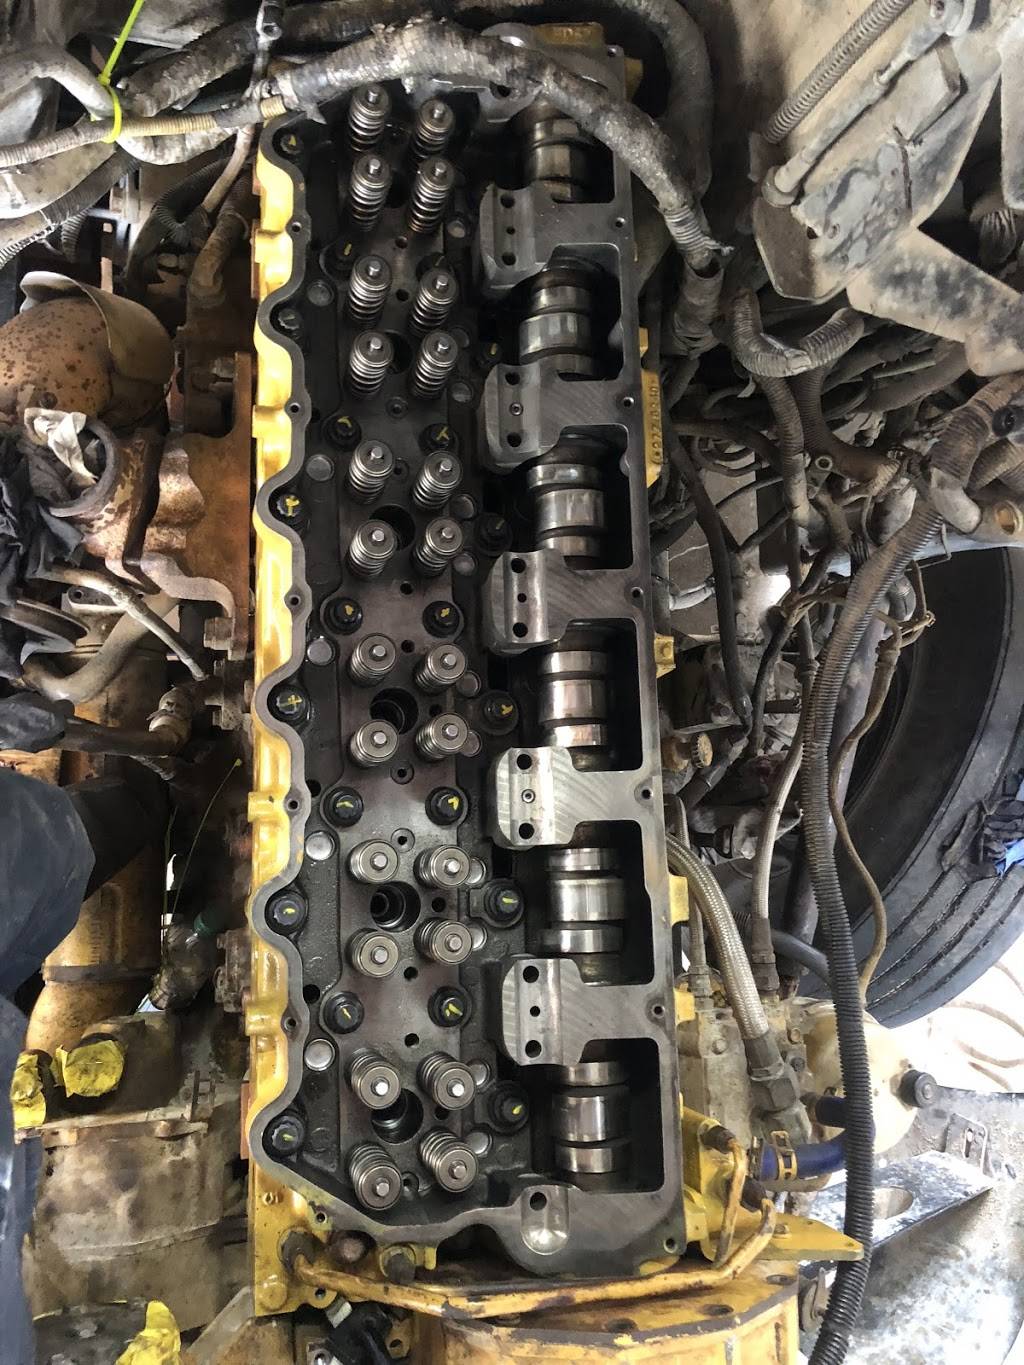 RPM Diesel Truck Repair | 1819 W Northwest Hwy, Dallas, TX 75220 | Phone: (214) 796-5909